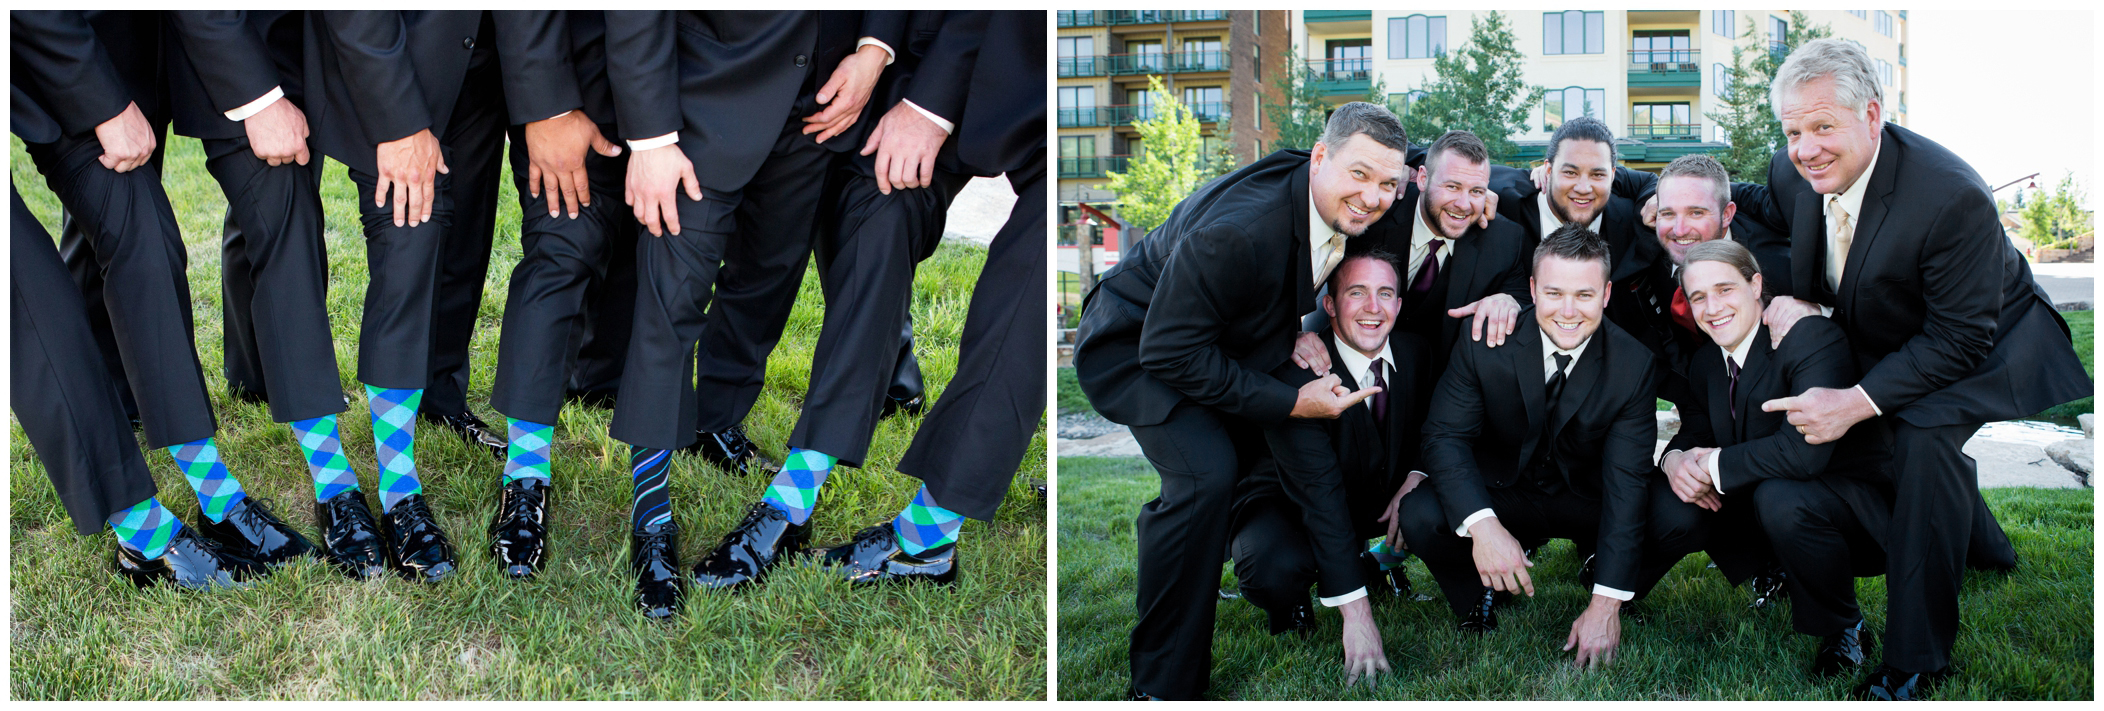 groomsmen in colorful socks 